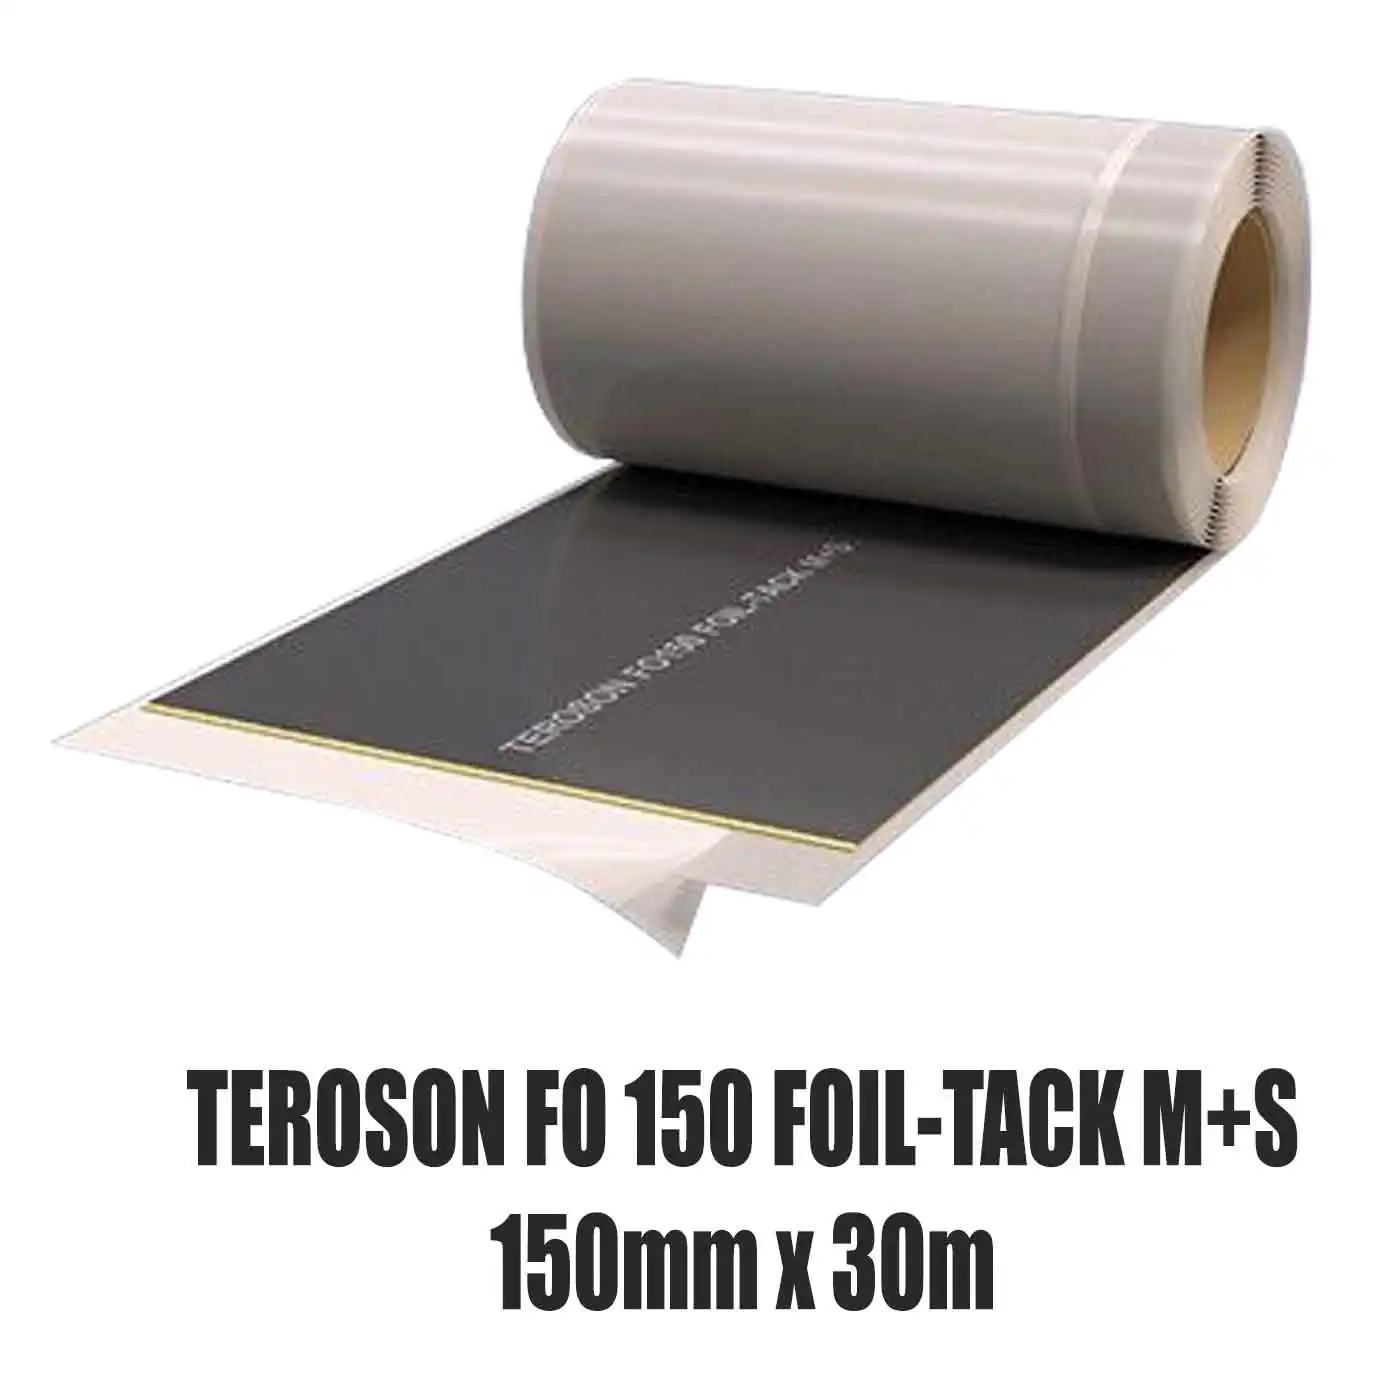 Dichtfolie TEROSON FO 150 FOIL-TACK M+S 150 mm x 30 m